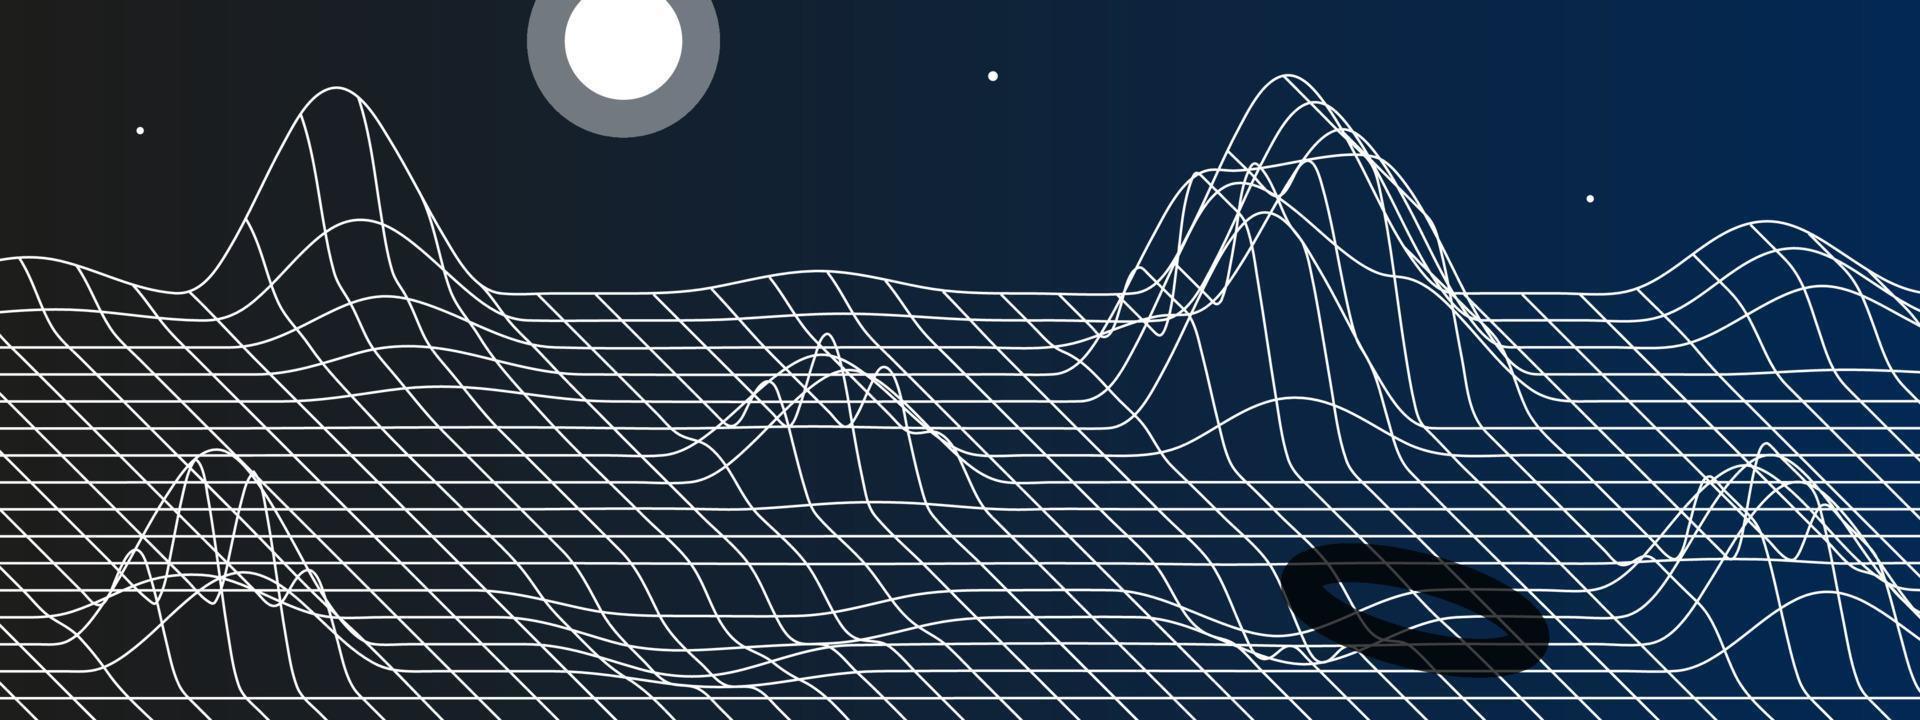 digital Plats landskap med berg, måne och stjärnor. vektor illustration av linjär maska och abstrakt form. perspektiv rutnät med konvex snedvridningar i de form av berg. natt bakgrund.